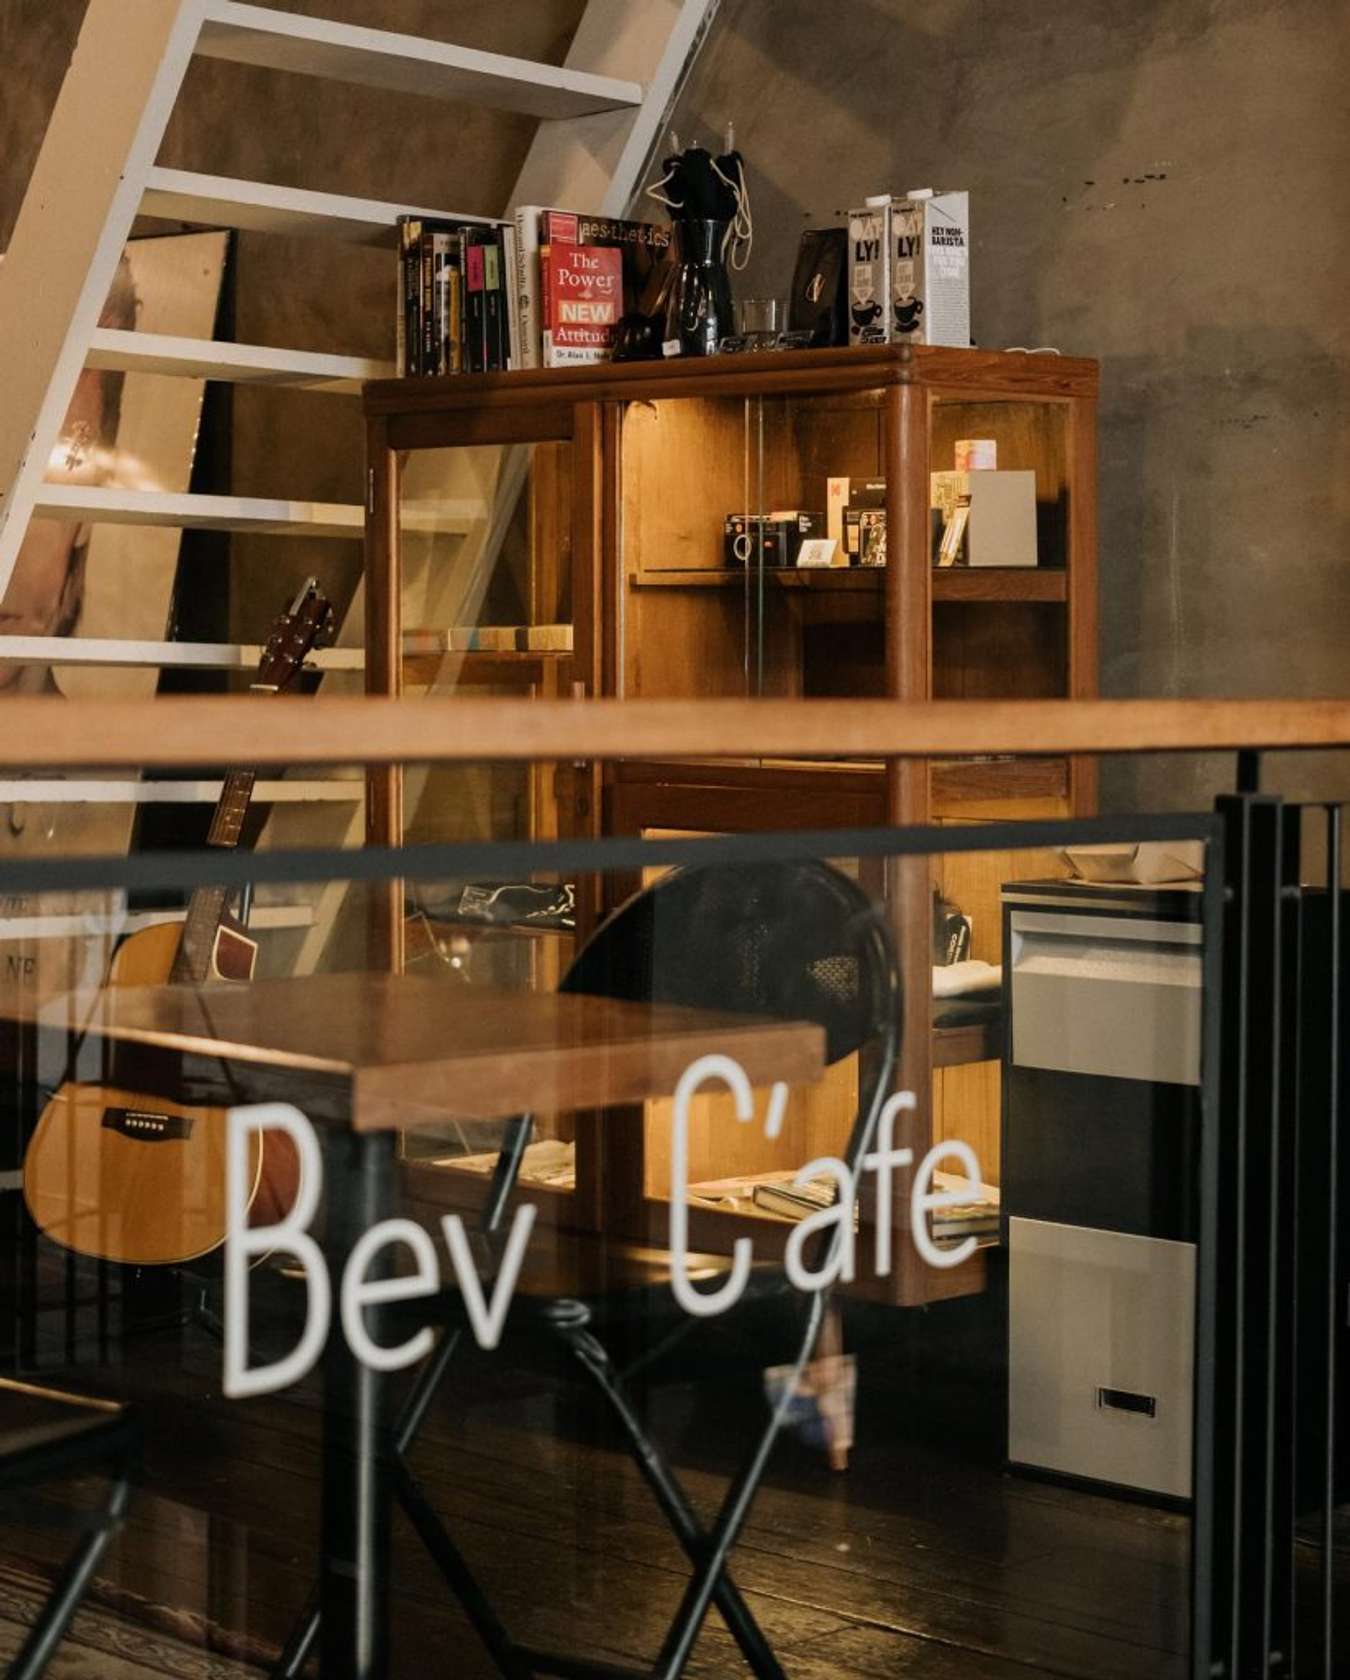 Bev C'afe - Cafe in JB